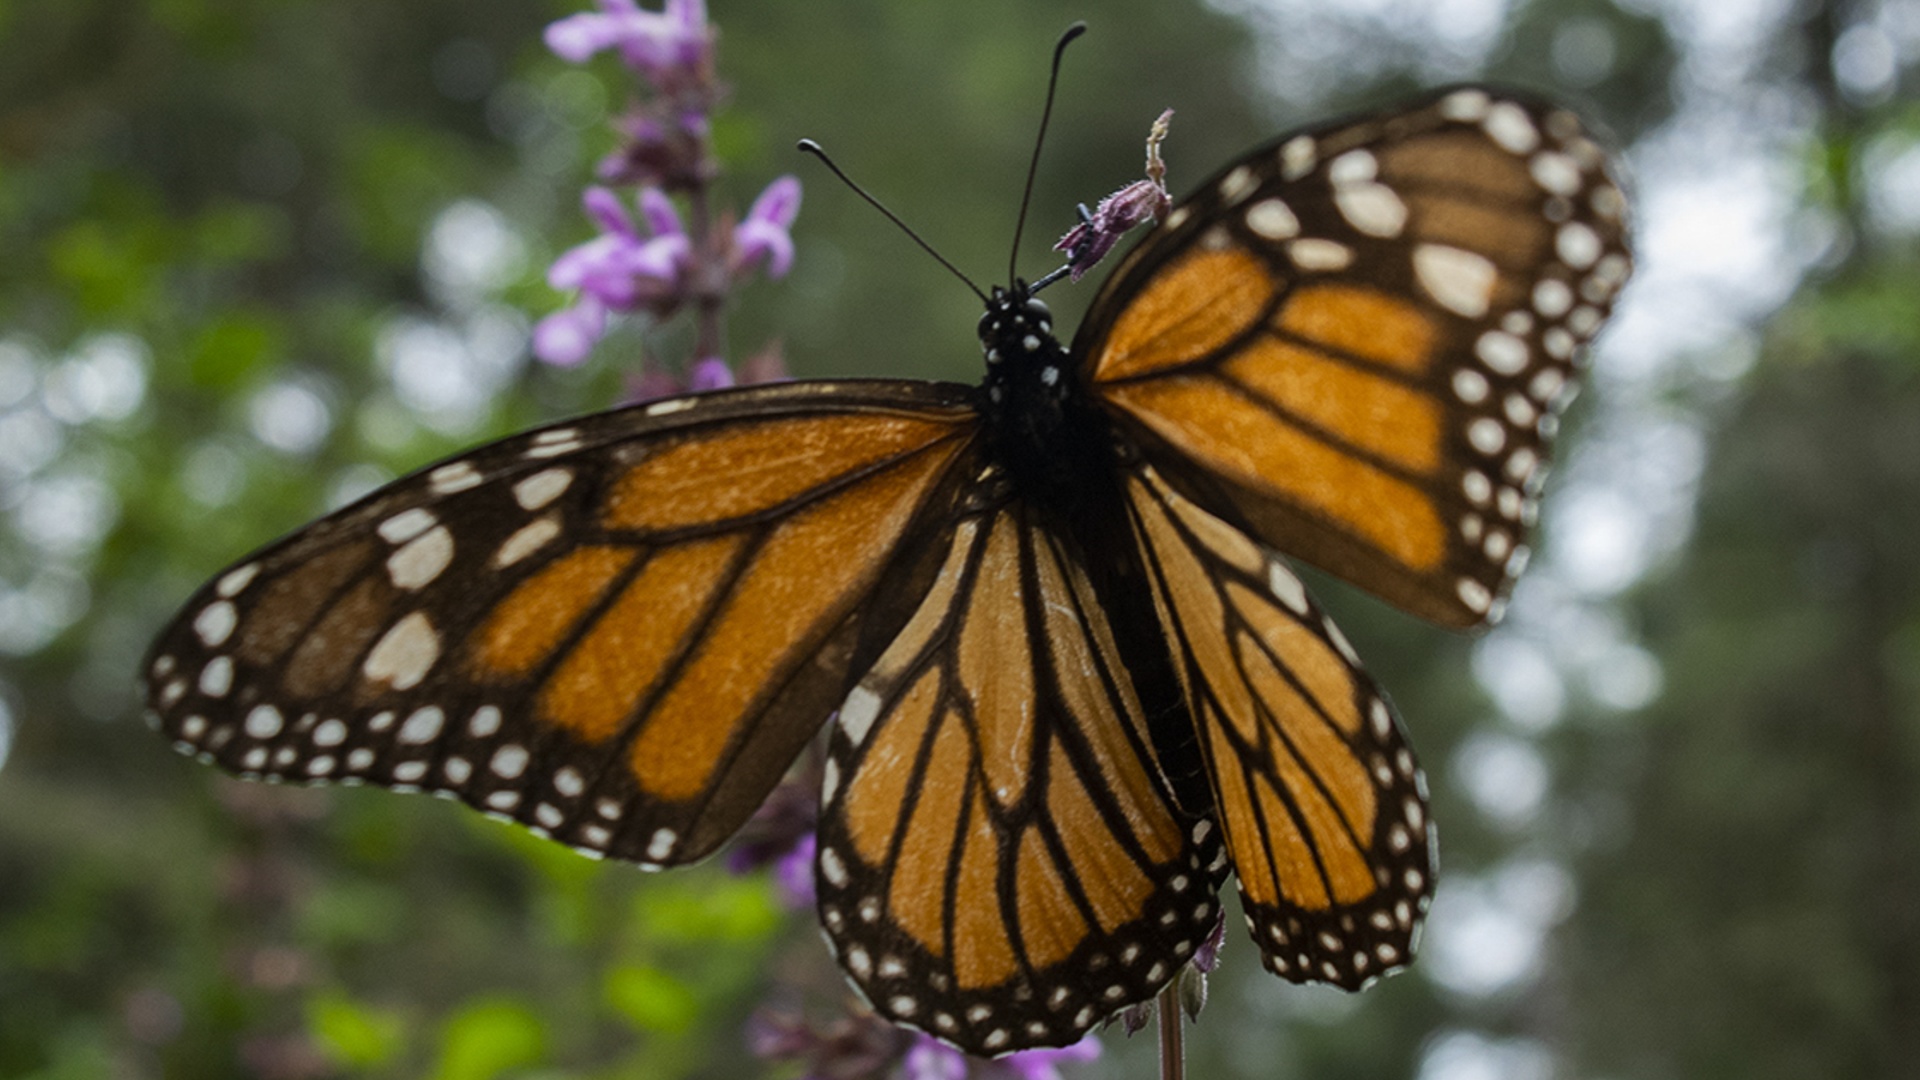 Миллионы бабочек-монархов вновь прилетели на зимовку в Мексику